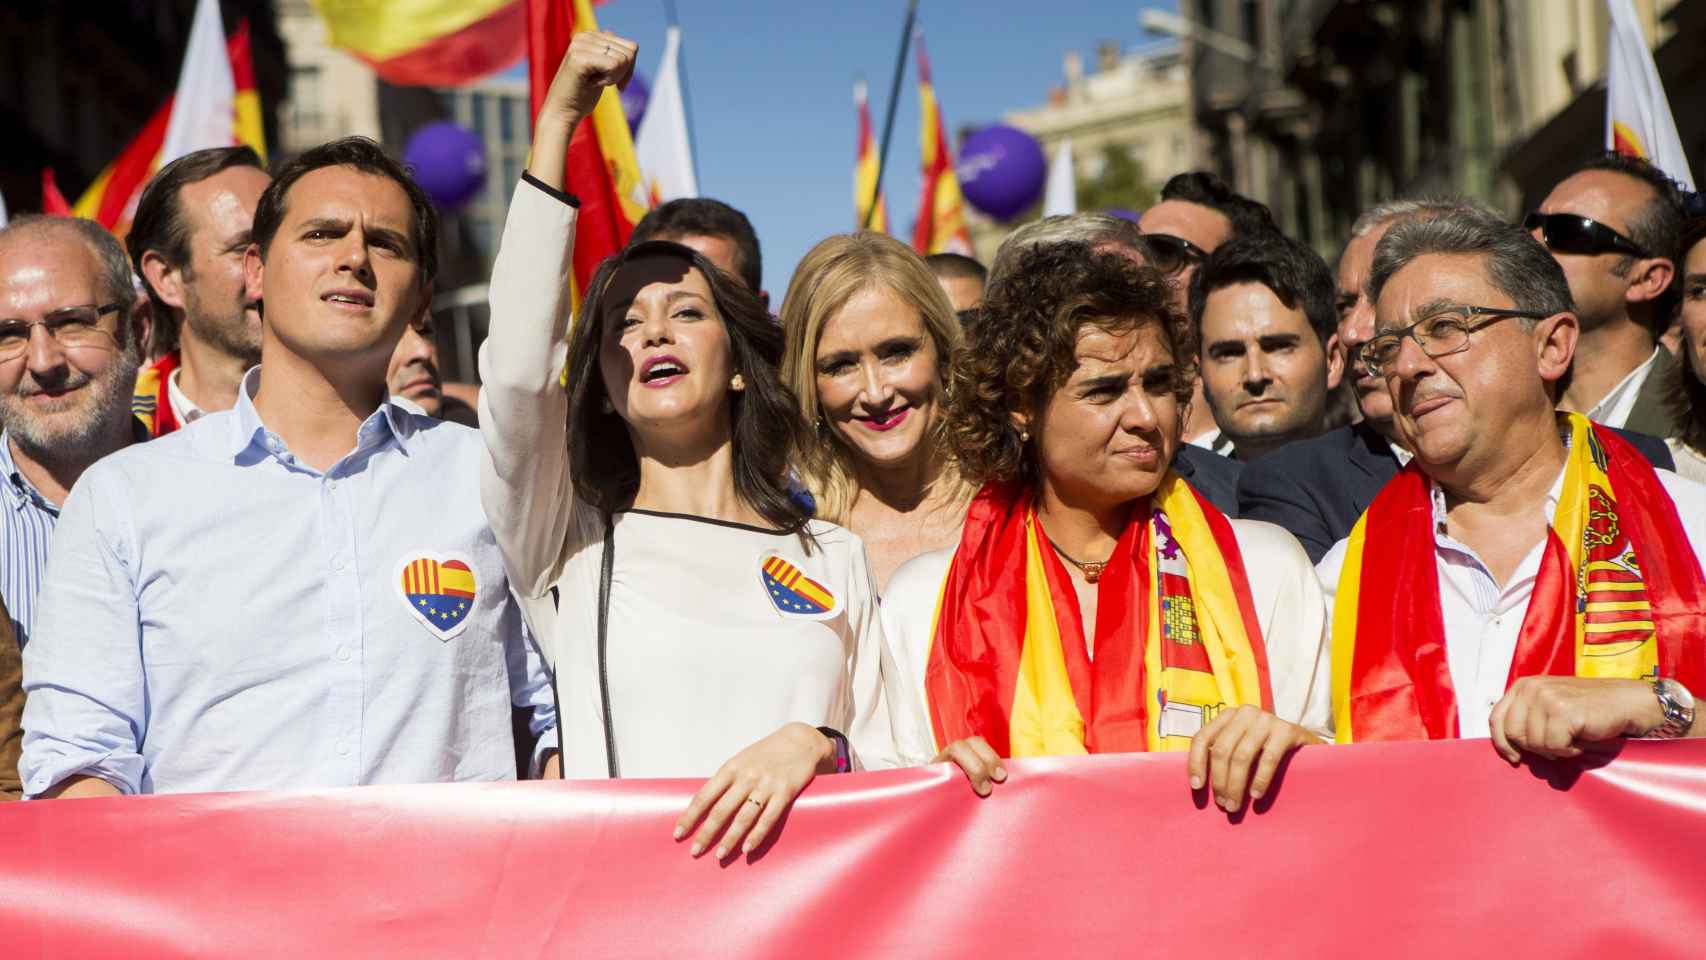 Las caras conocidas en la manifestación por la unidad de España en Barcelona